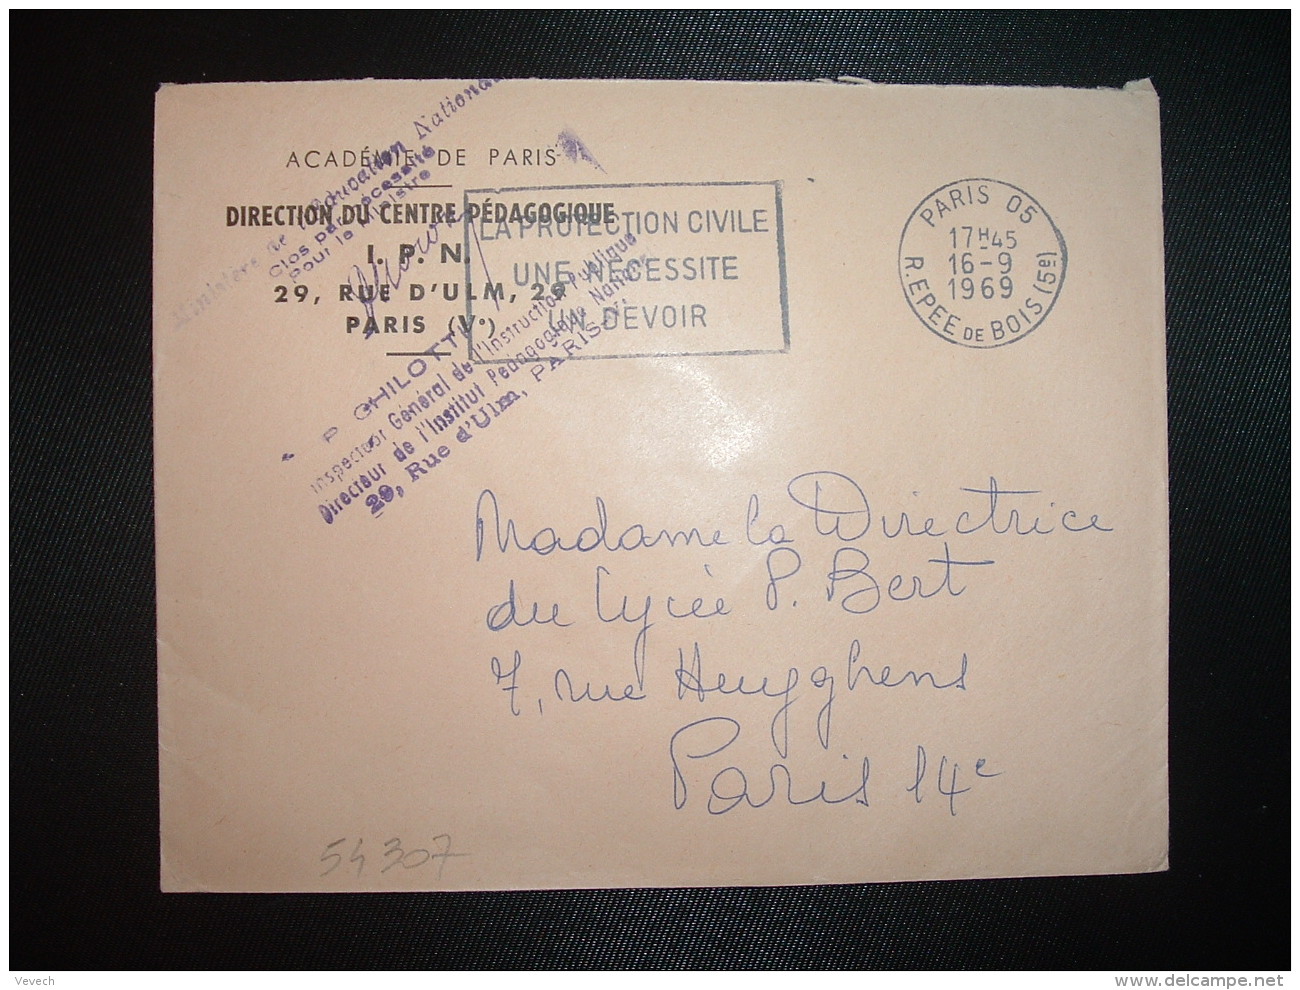 LETTRE OBL.MEC.16-9-1969 PARIS 05 + ACADEMIE DE PARIS DIRECTION DU CENTRE PEDAGOGIQUE I.P.N. - Civil Frank Covers